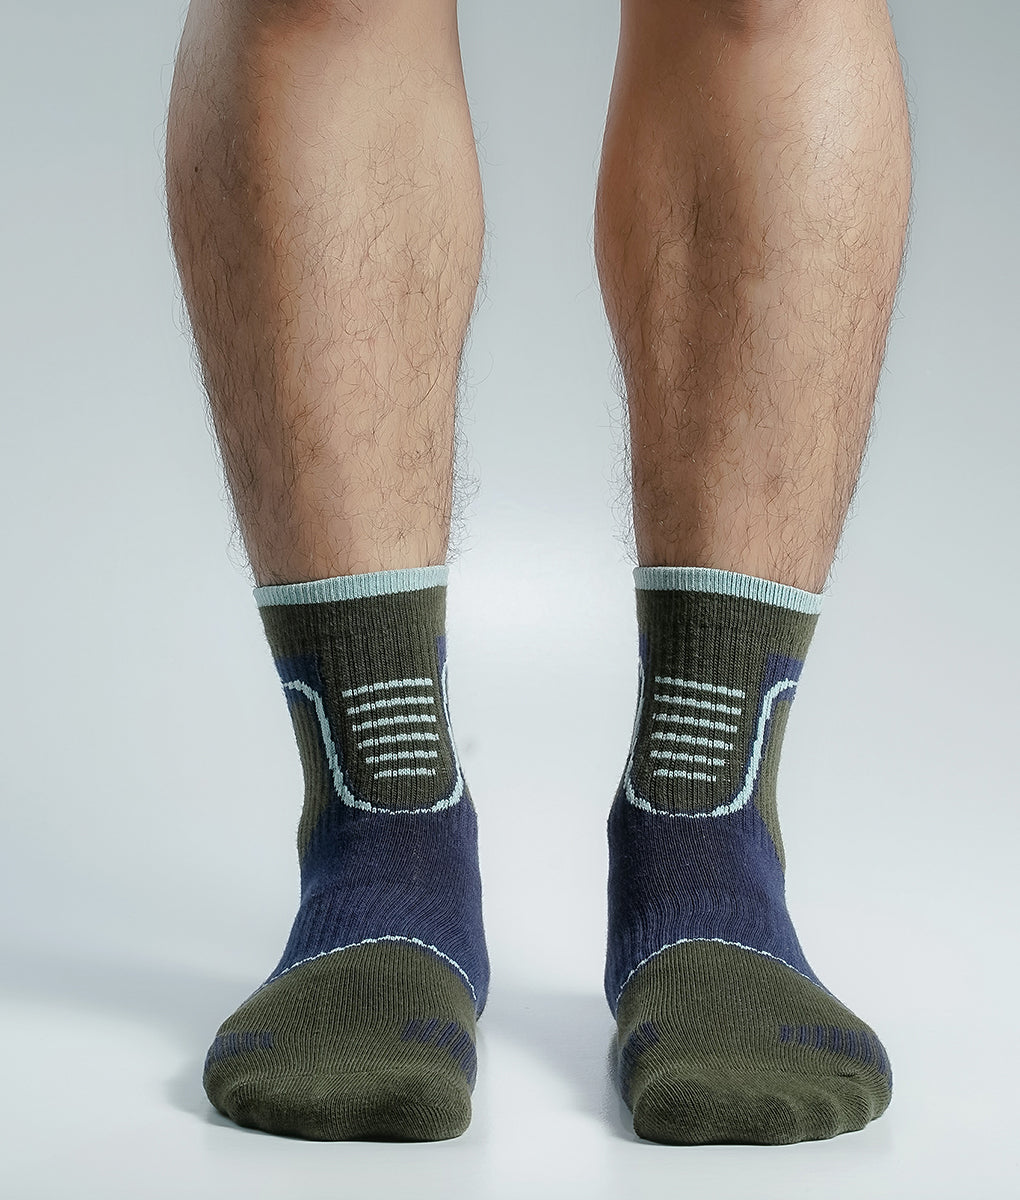 Premium Ankle Socks For Men